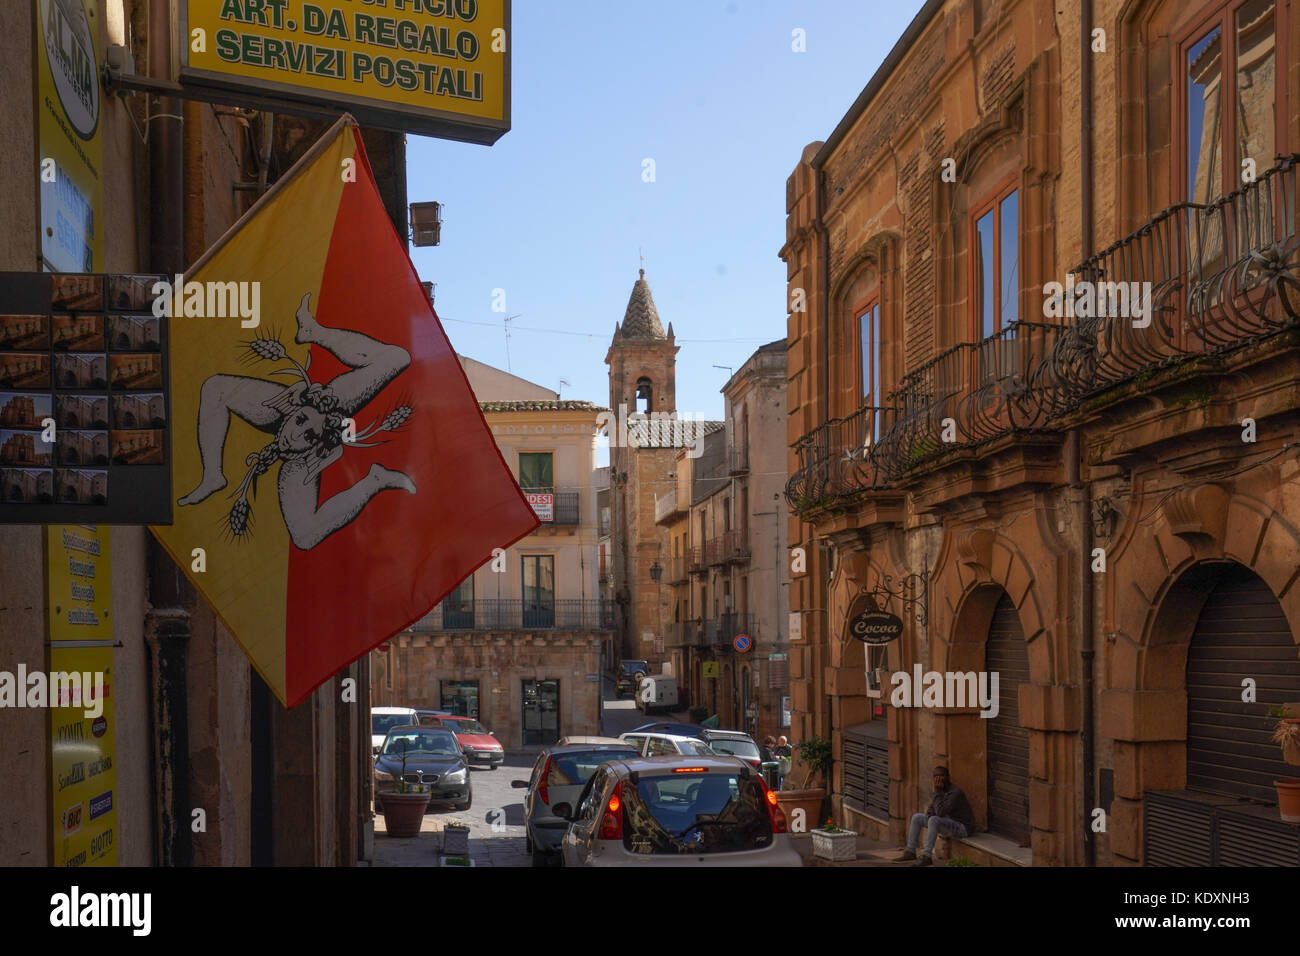 Ein Blick auf die Stadt Piazza Armerina mit einem sizilianischen Flagge im Vordergrund. Aus einer Serie von Fotos in Sizilien, Italien. foto Datum: Donnerstag, o Stockfoto